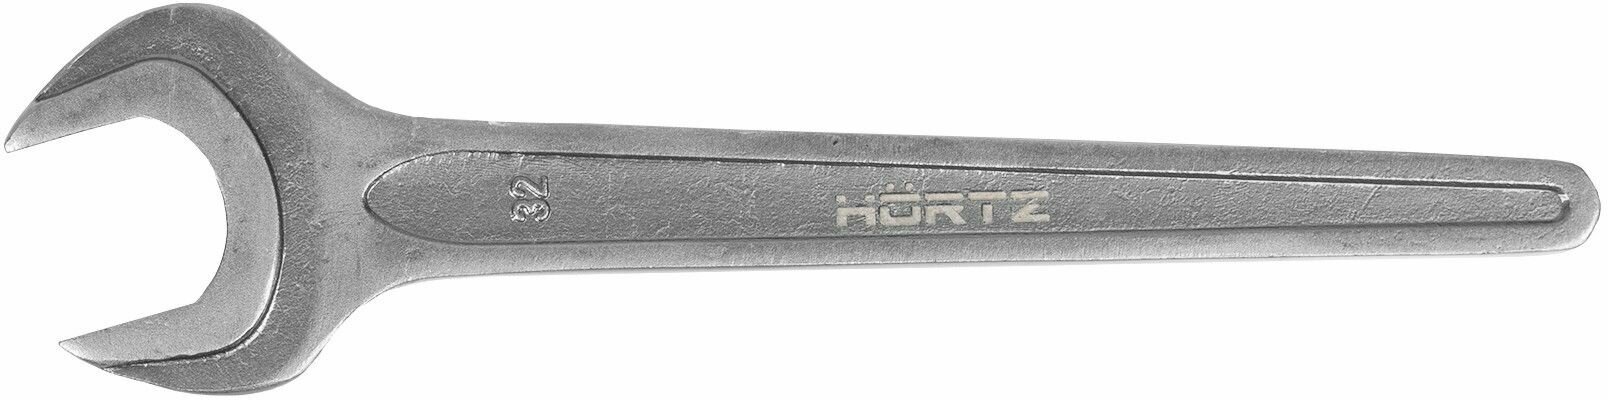 Односторонний рожковый ключ HORTZ - фото №4